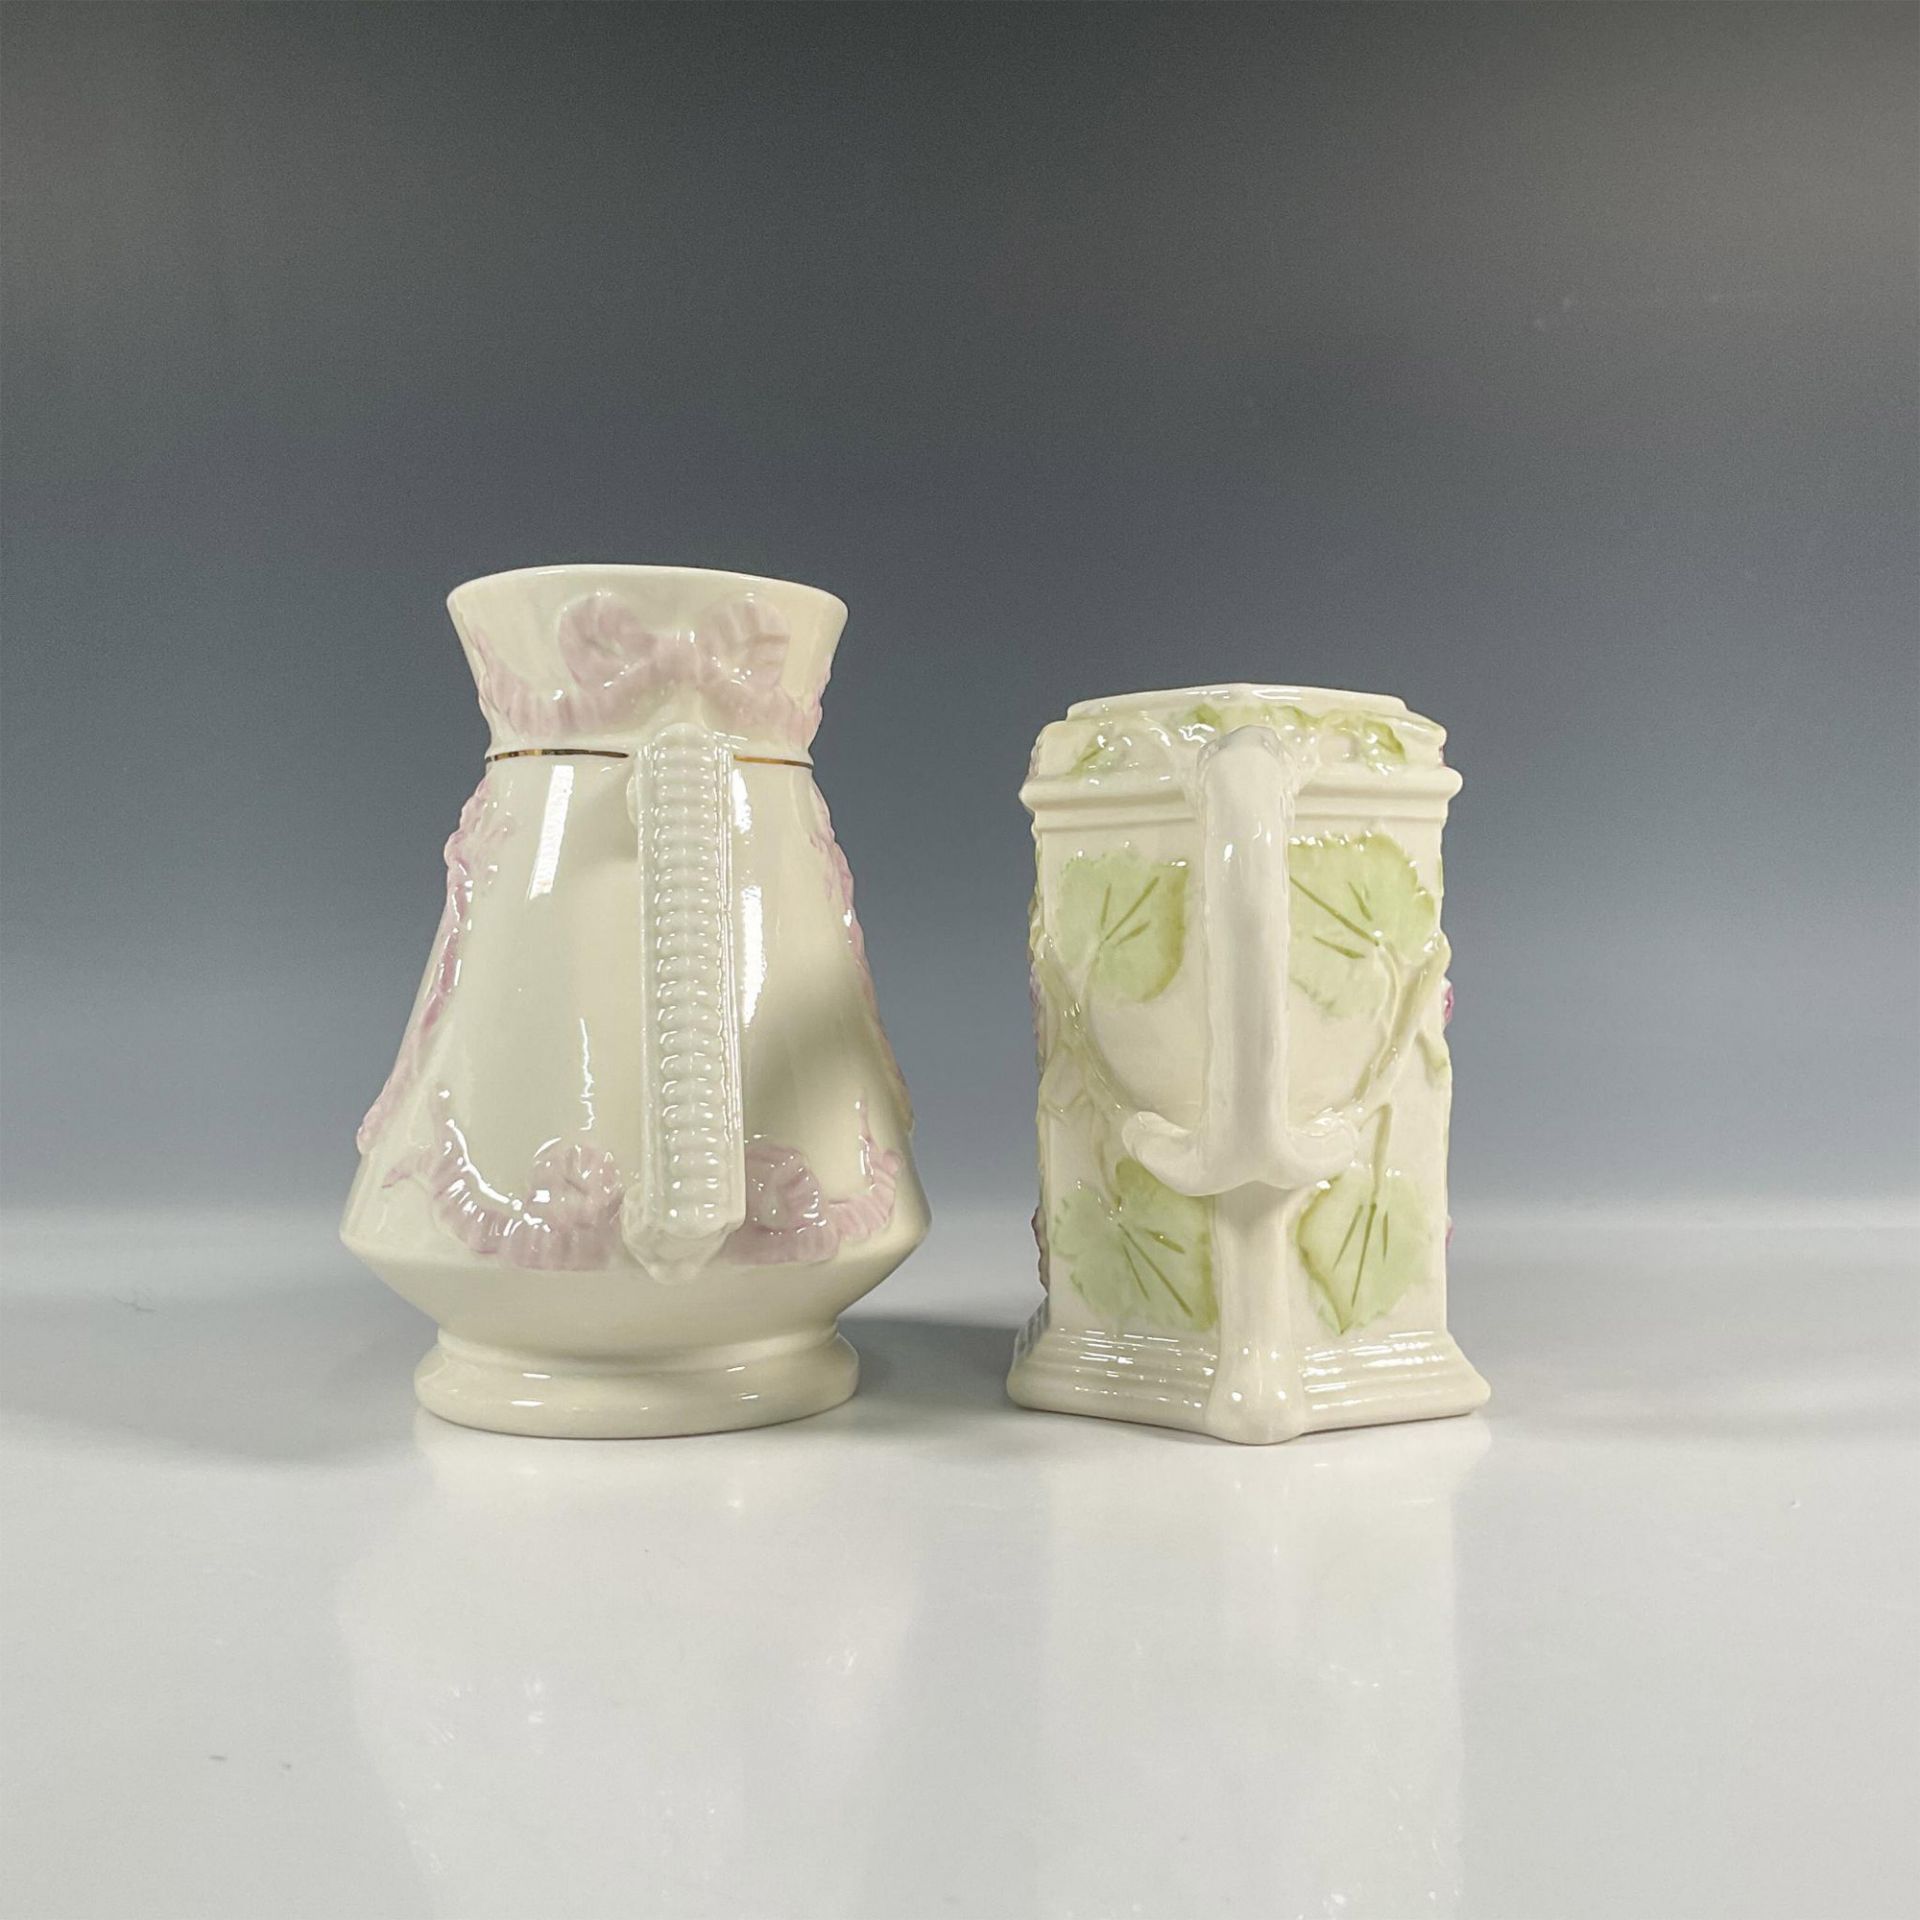 2pc Belleek Porcelain Florence Pitcher and Vine Jug - Image 3 of 5